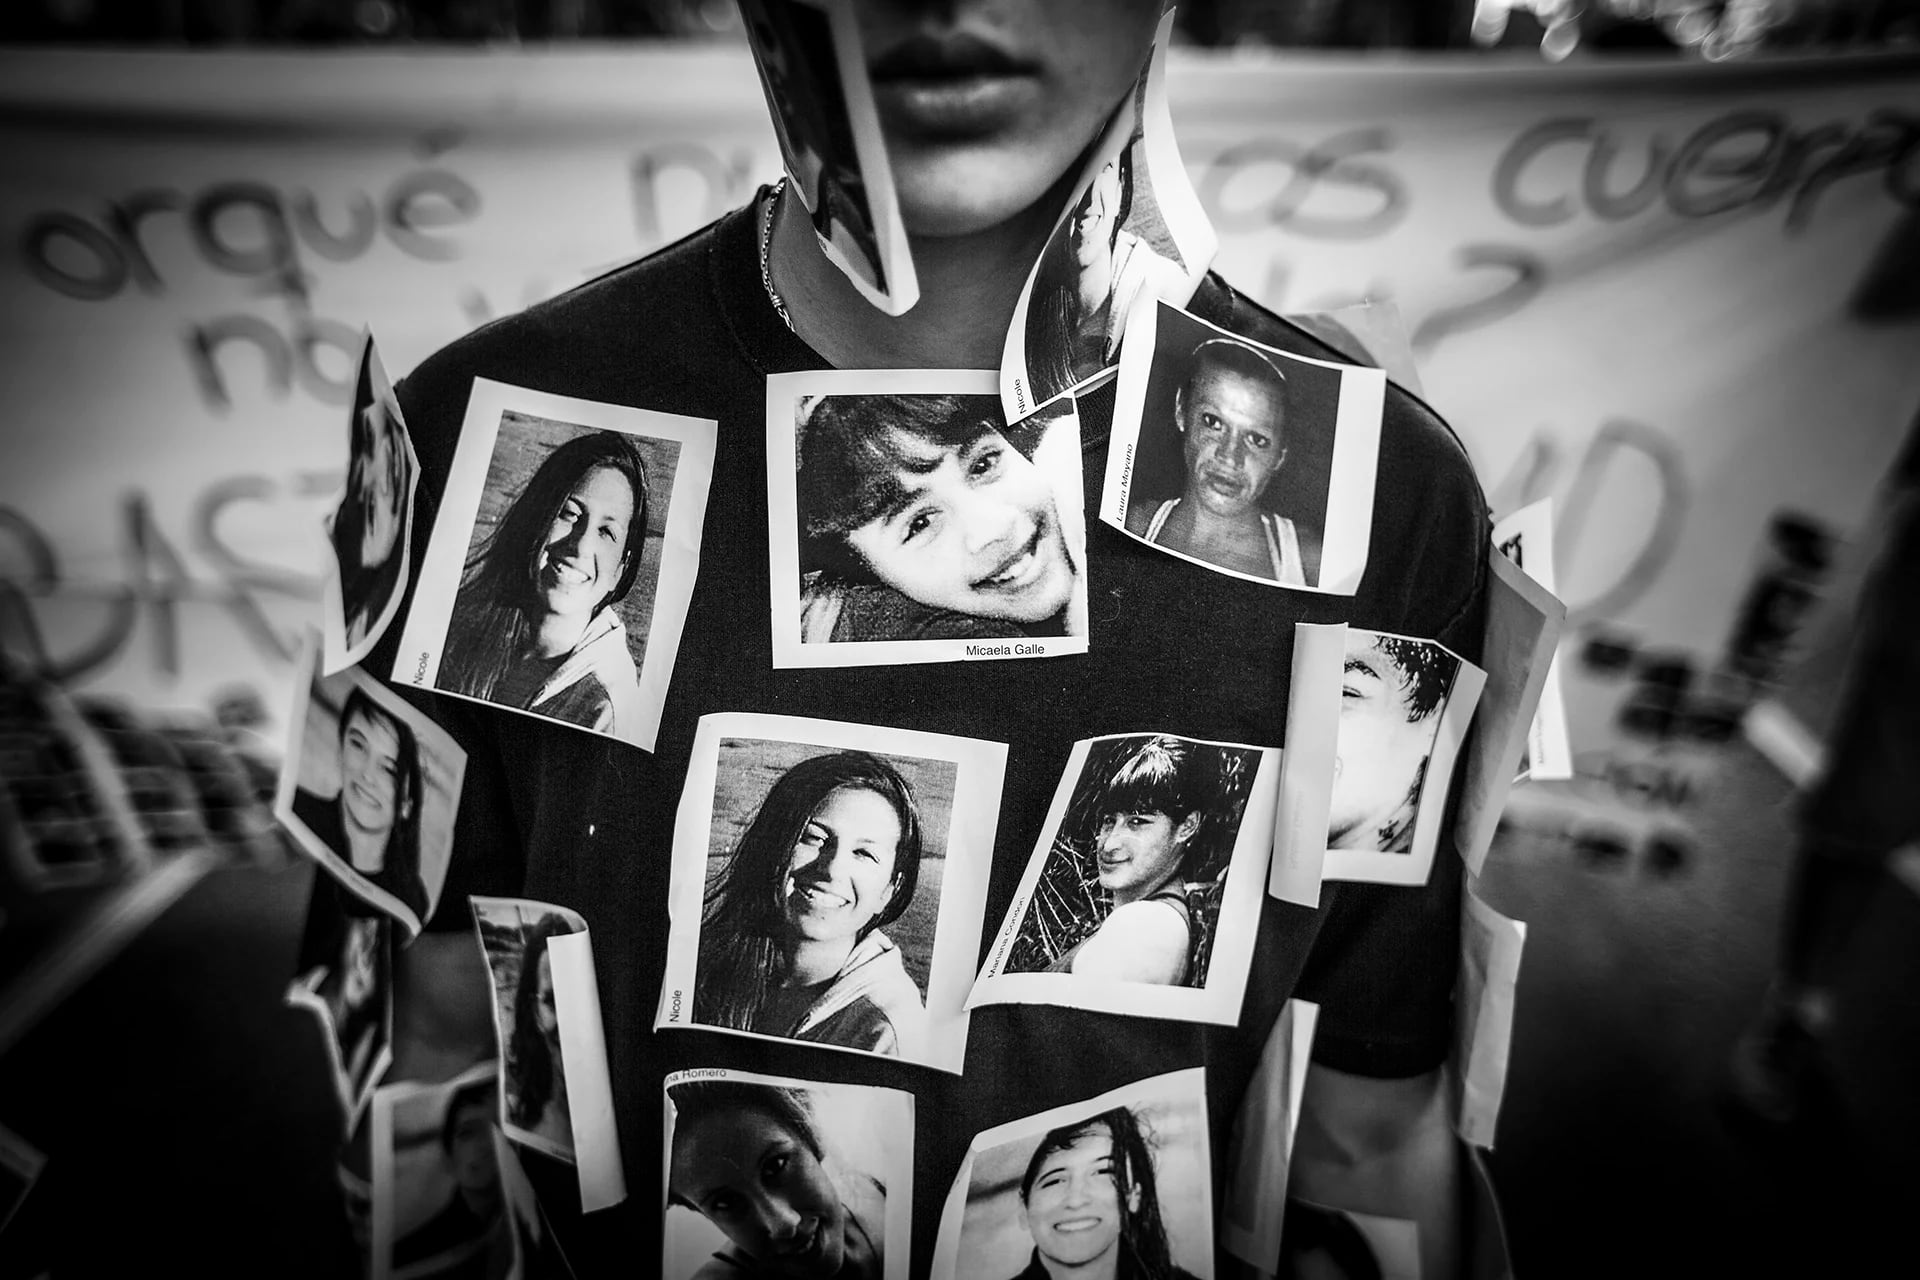 Un joven realiza una perfomance con fotos de víctimas de violencia de género, durante la marcha “Ni una menos” desde el Congreso Nacional a la Plaza de Mayo (Martín Zabala)